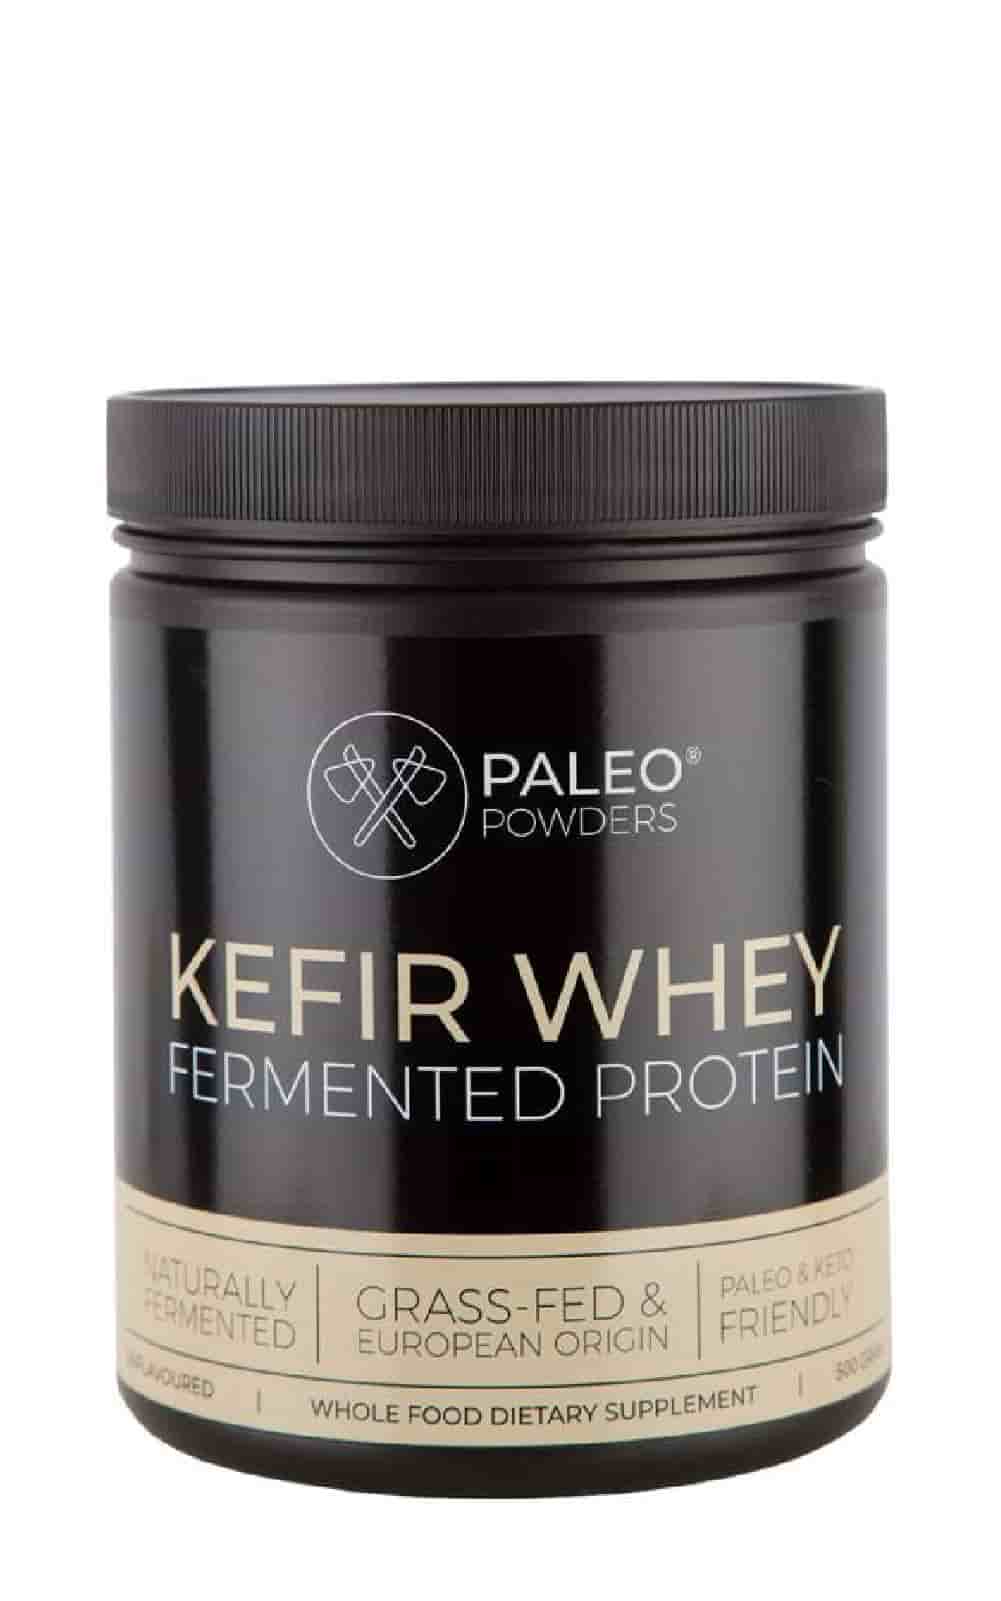 Kefir Whey - Fermented Protein Powder